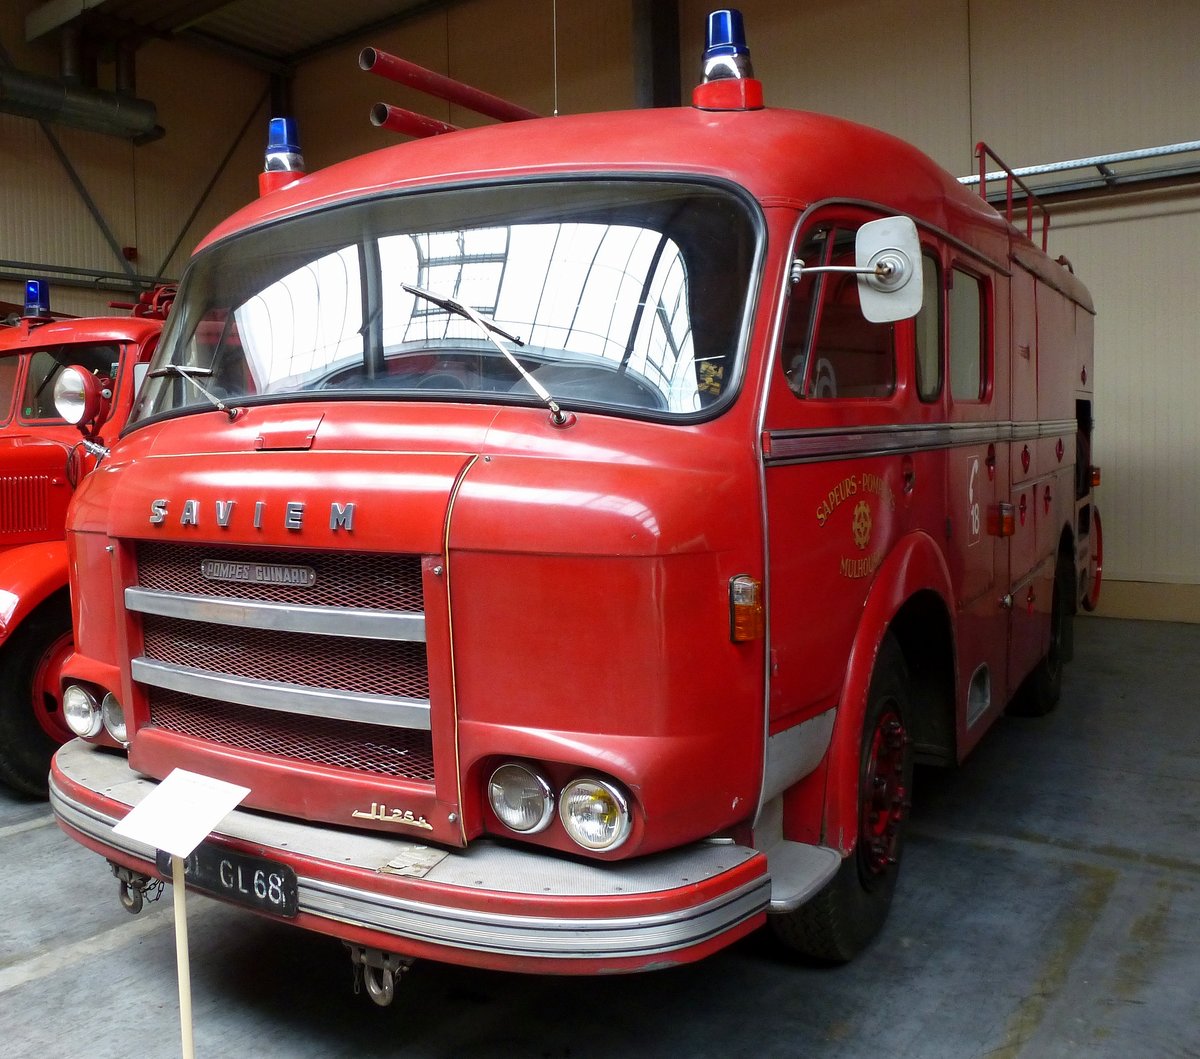 Saviem, Feuerwehr von 1964, mit 3500Liter Lschmitteltank, war im Dienst der Stadt Mlhausen (Mulhouse), Feuerwehrmuseum Vieux-Ferrette, Mai 2016